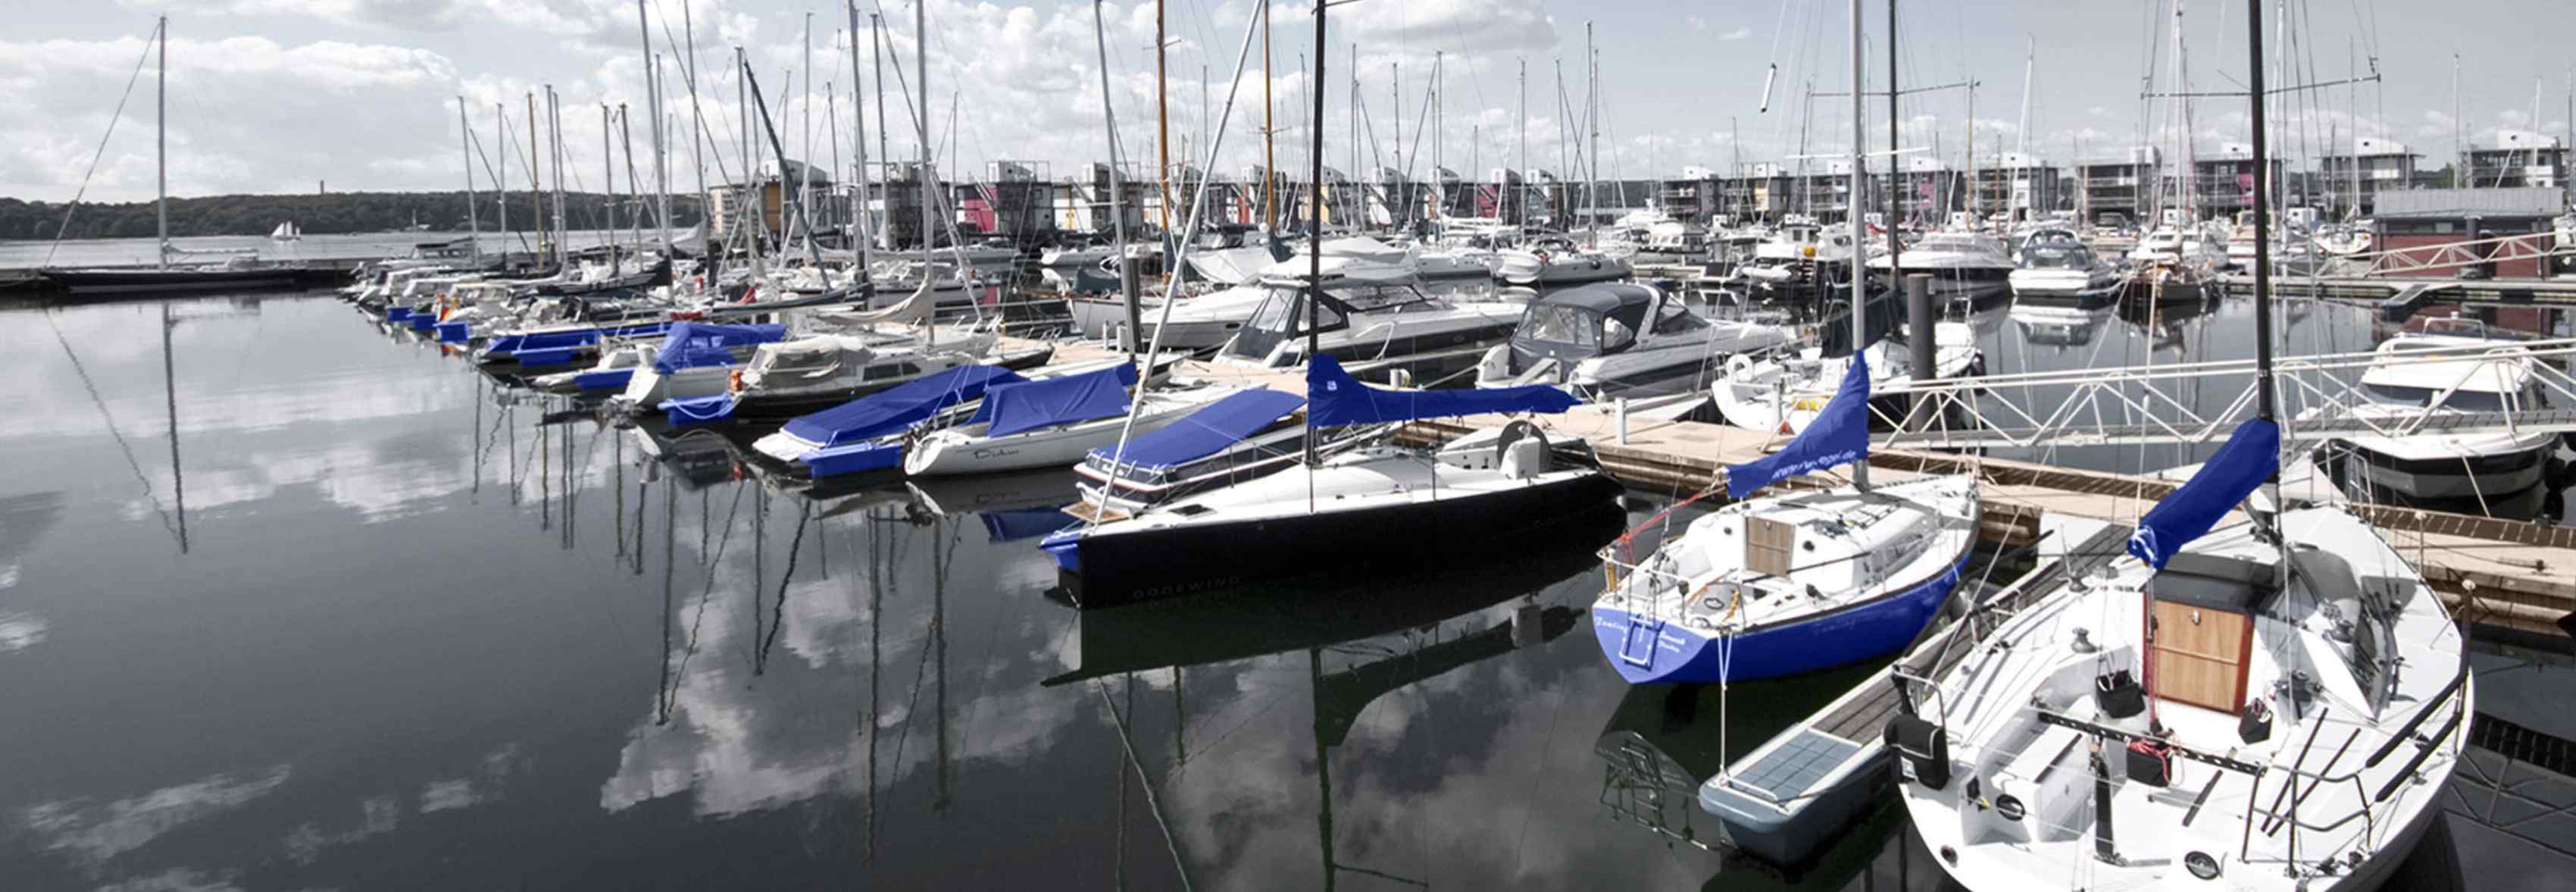 Hafen Flensburg Boote Steuerberater Wirtschaftsprüfer